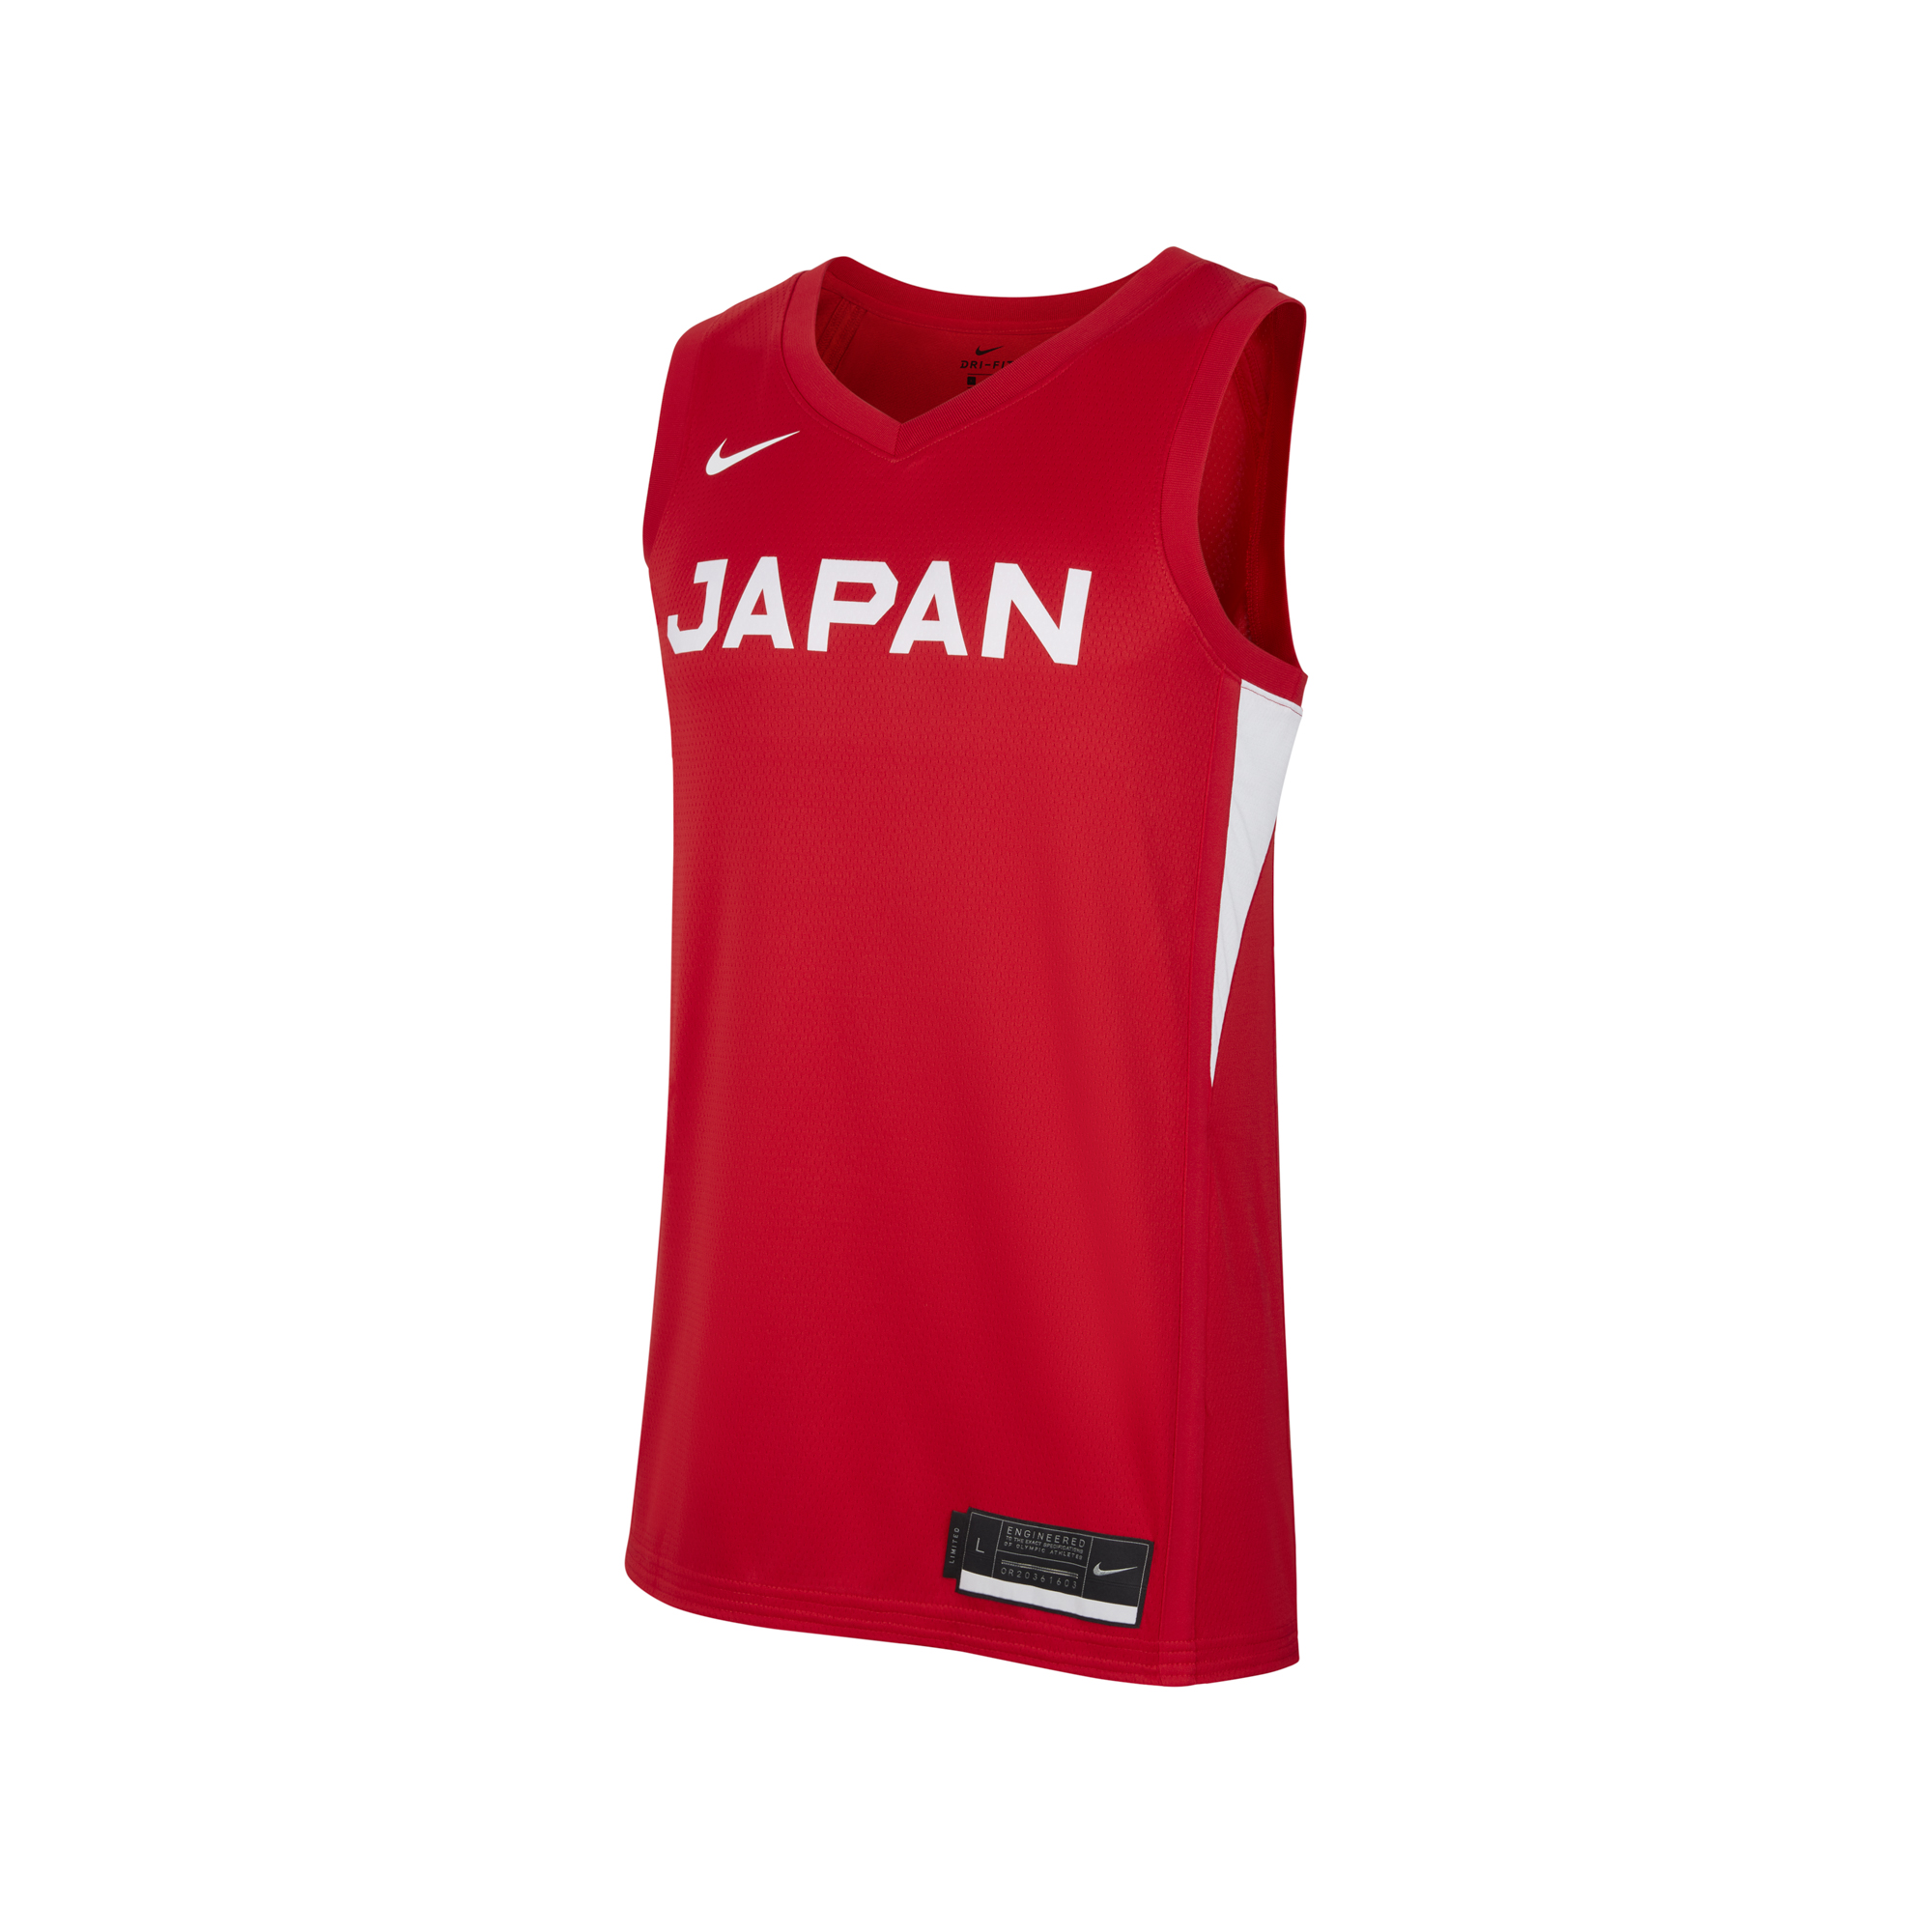 ナイキが日本バスケ協会とスポンサー契約、代表ユニフォーム発表